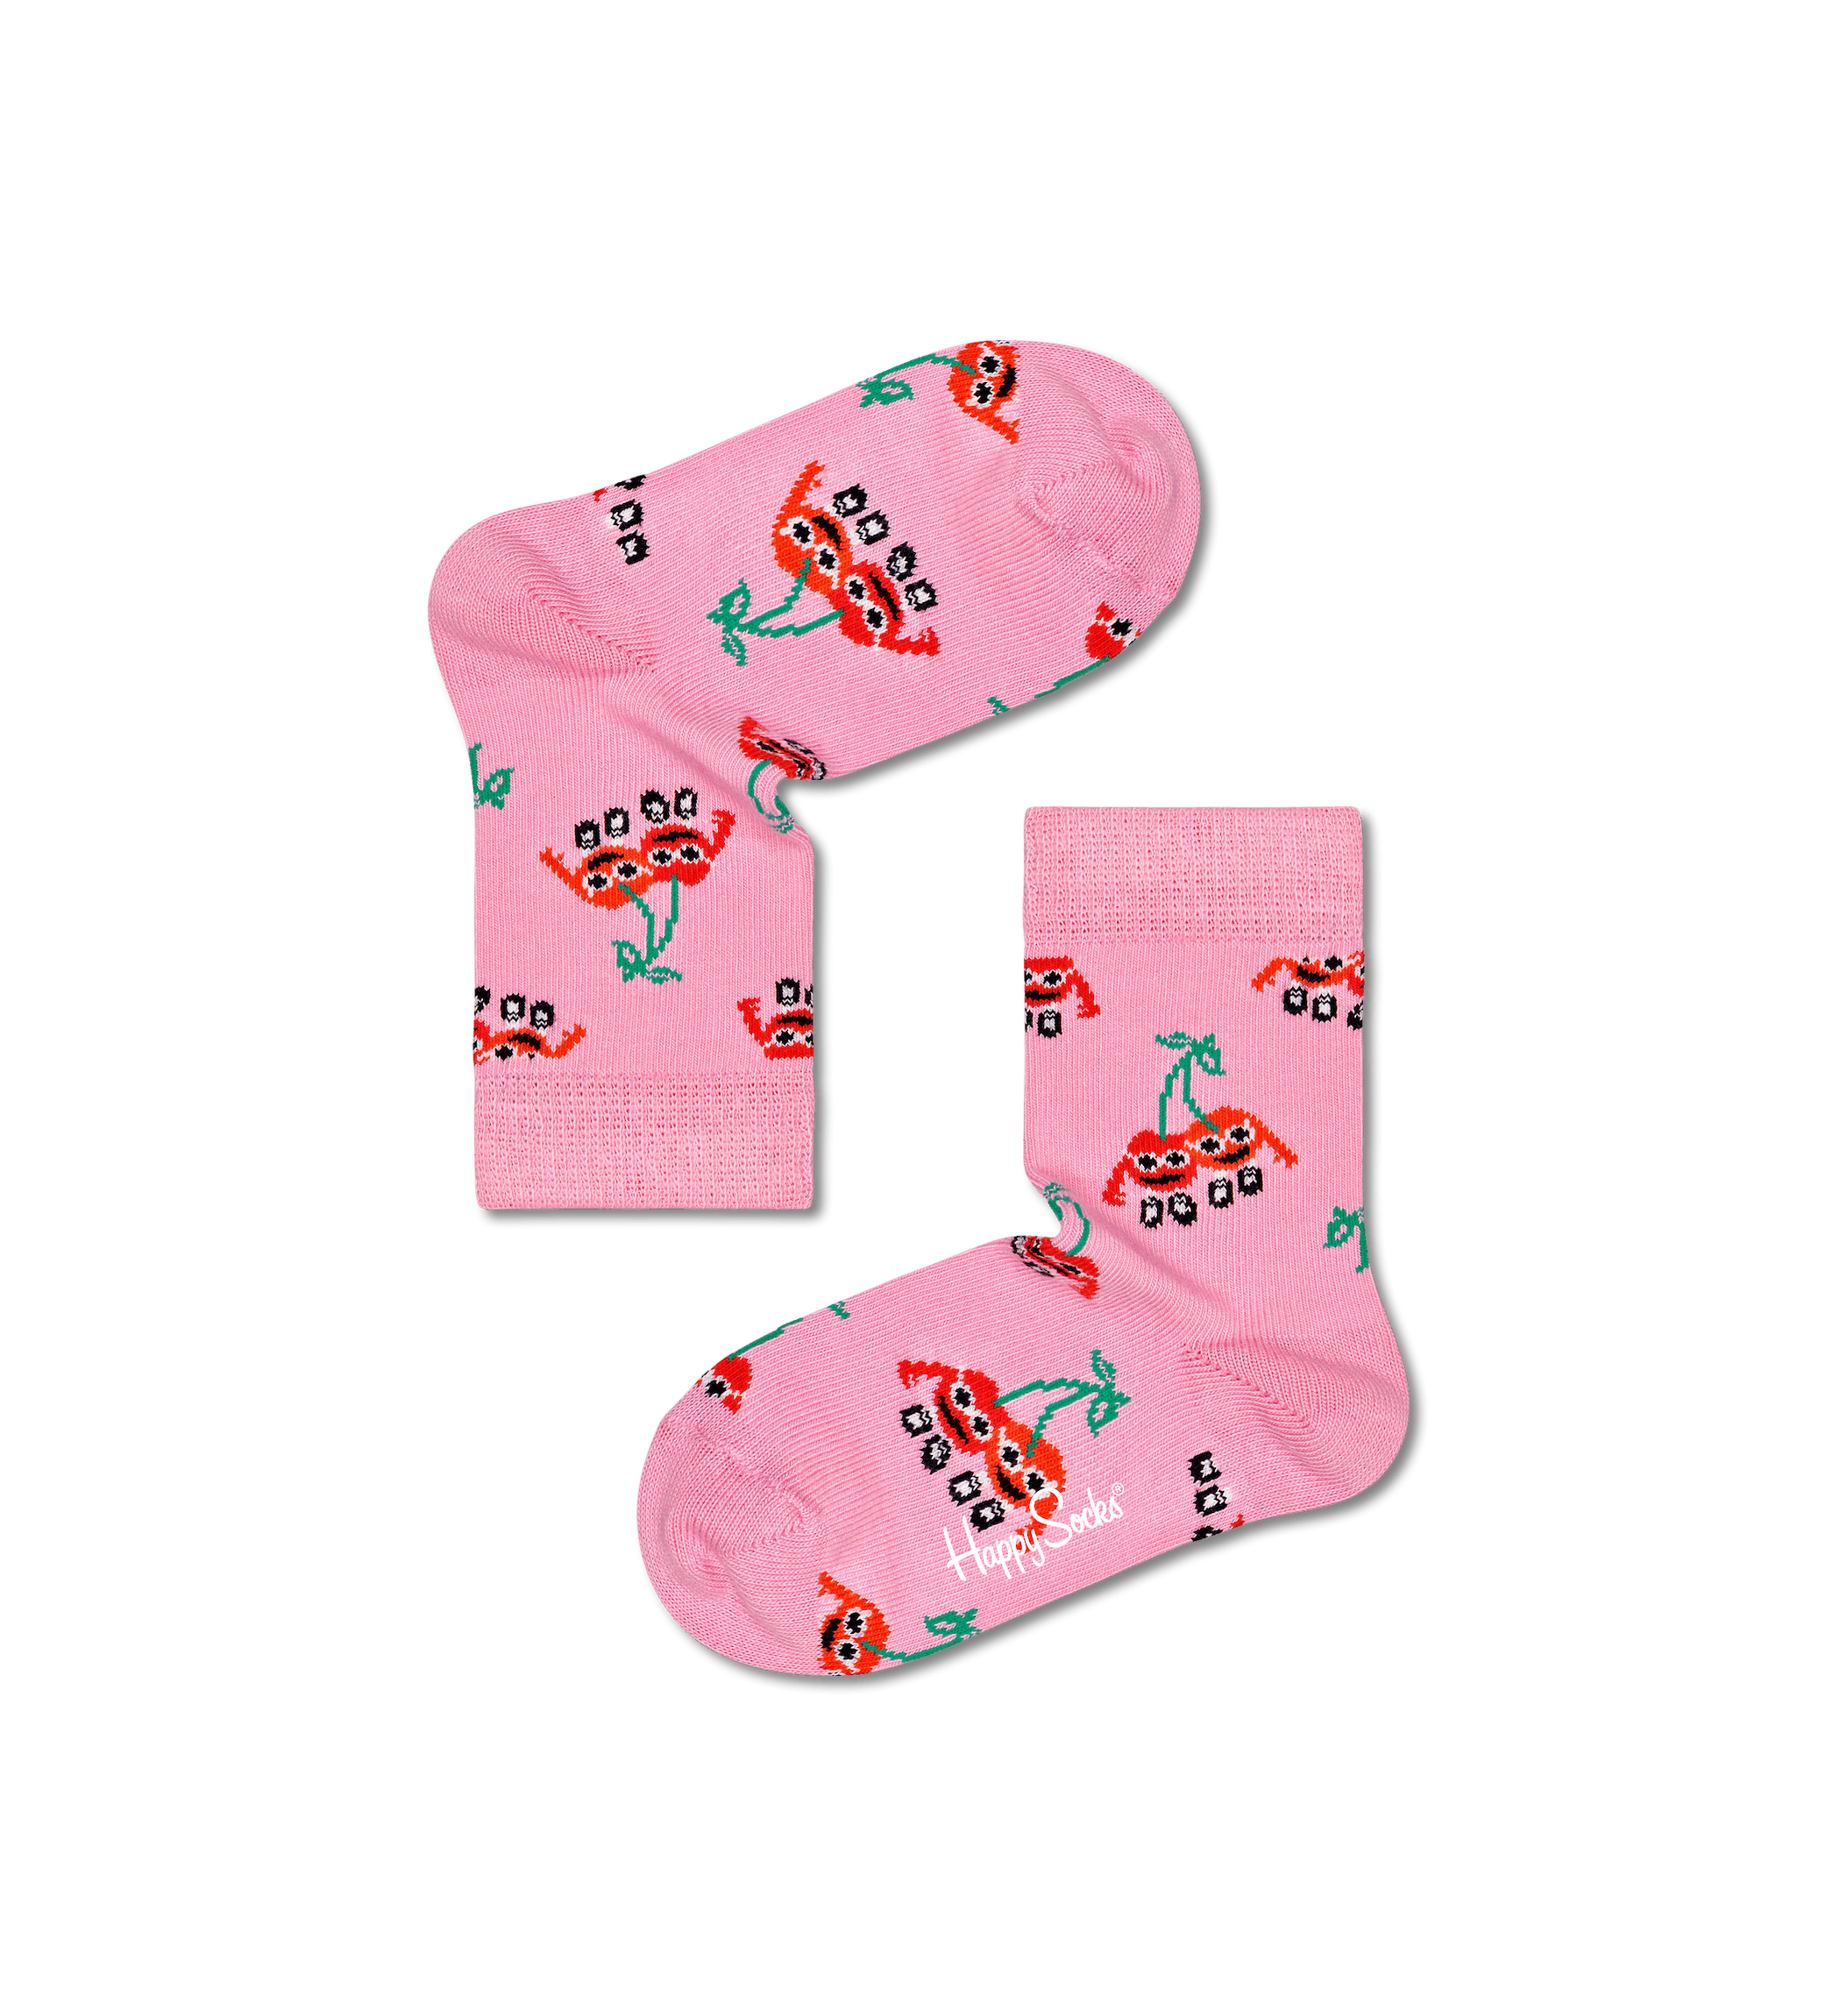 Detské ružové ponožky Happy Socks s čerešňami, vzor Cherry Mates